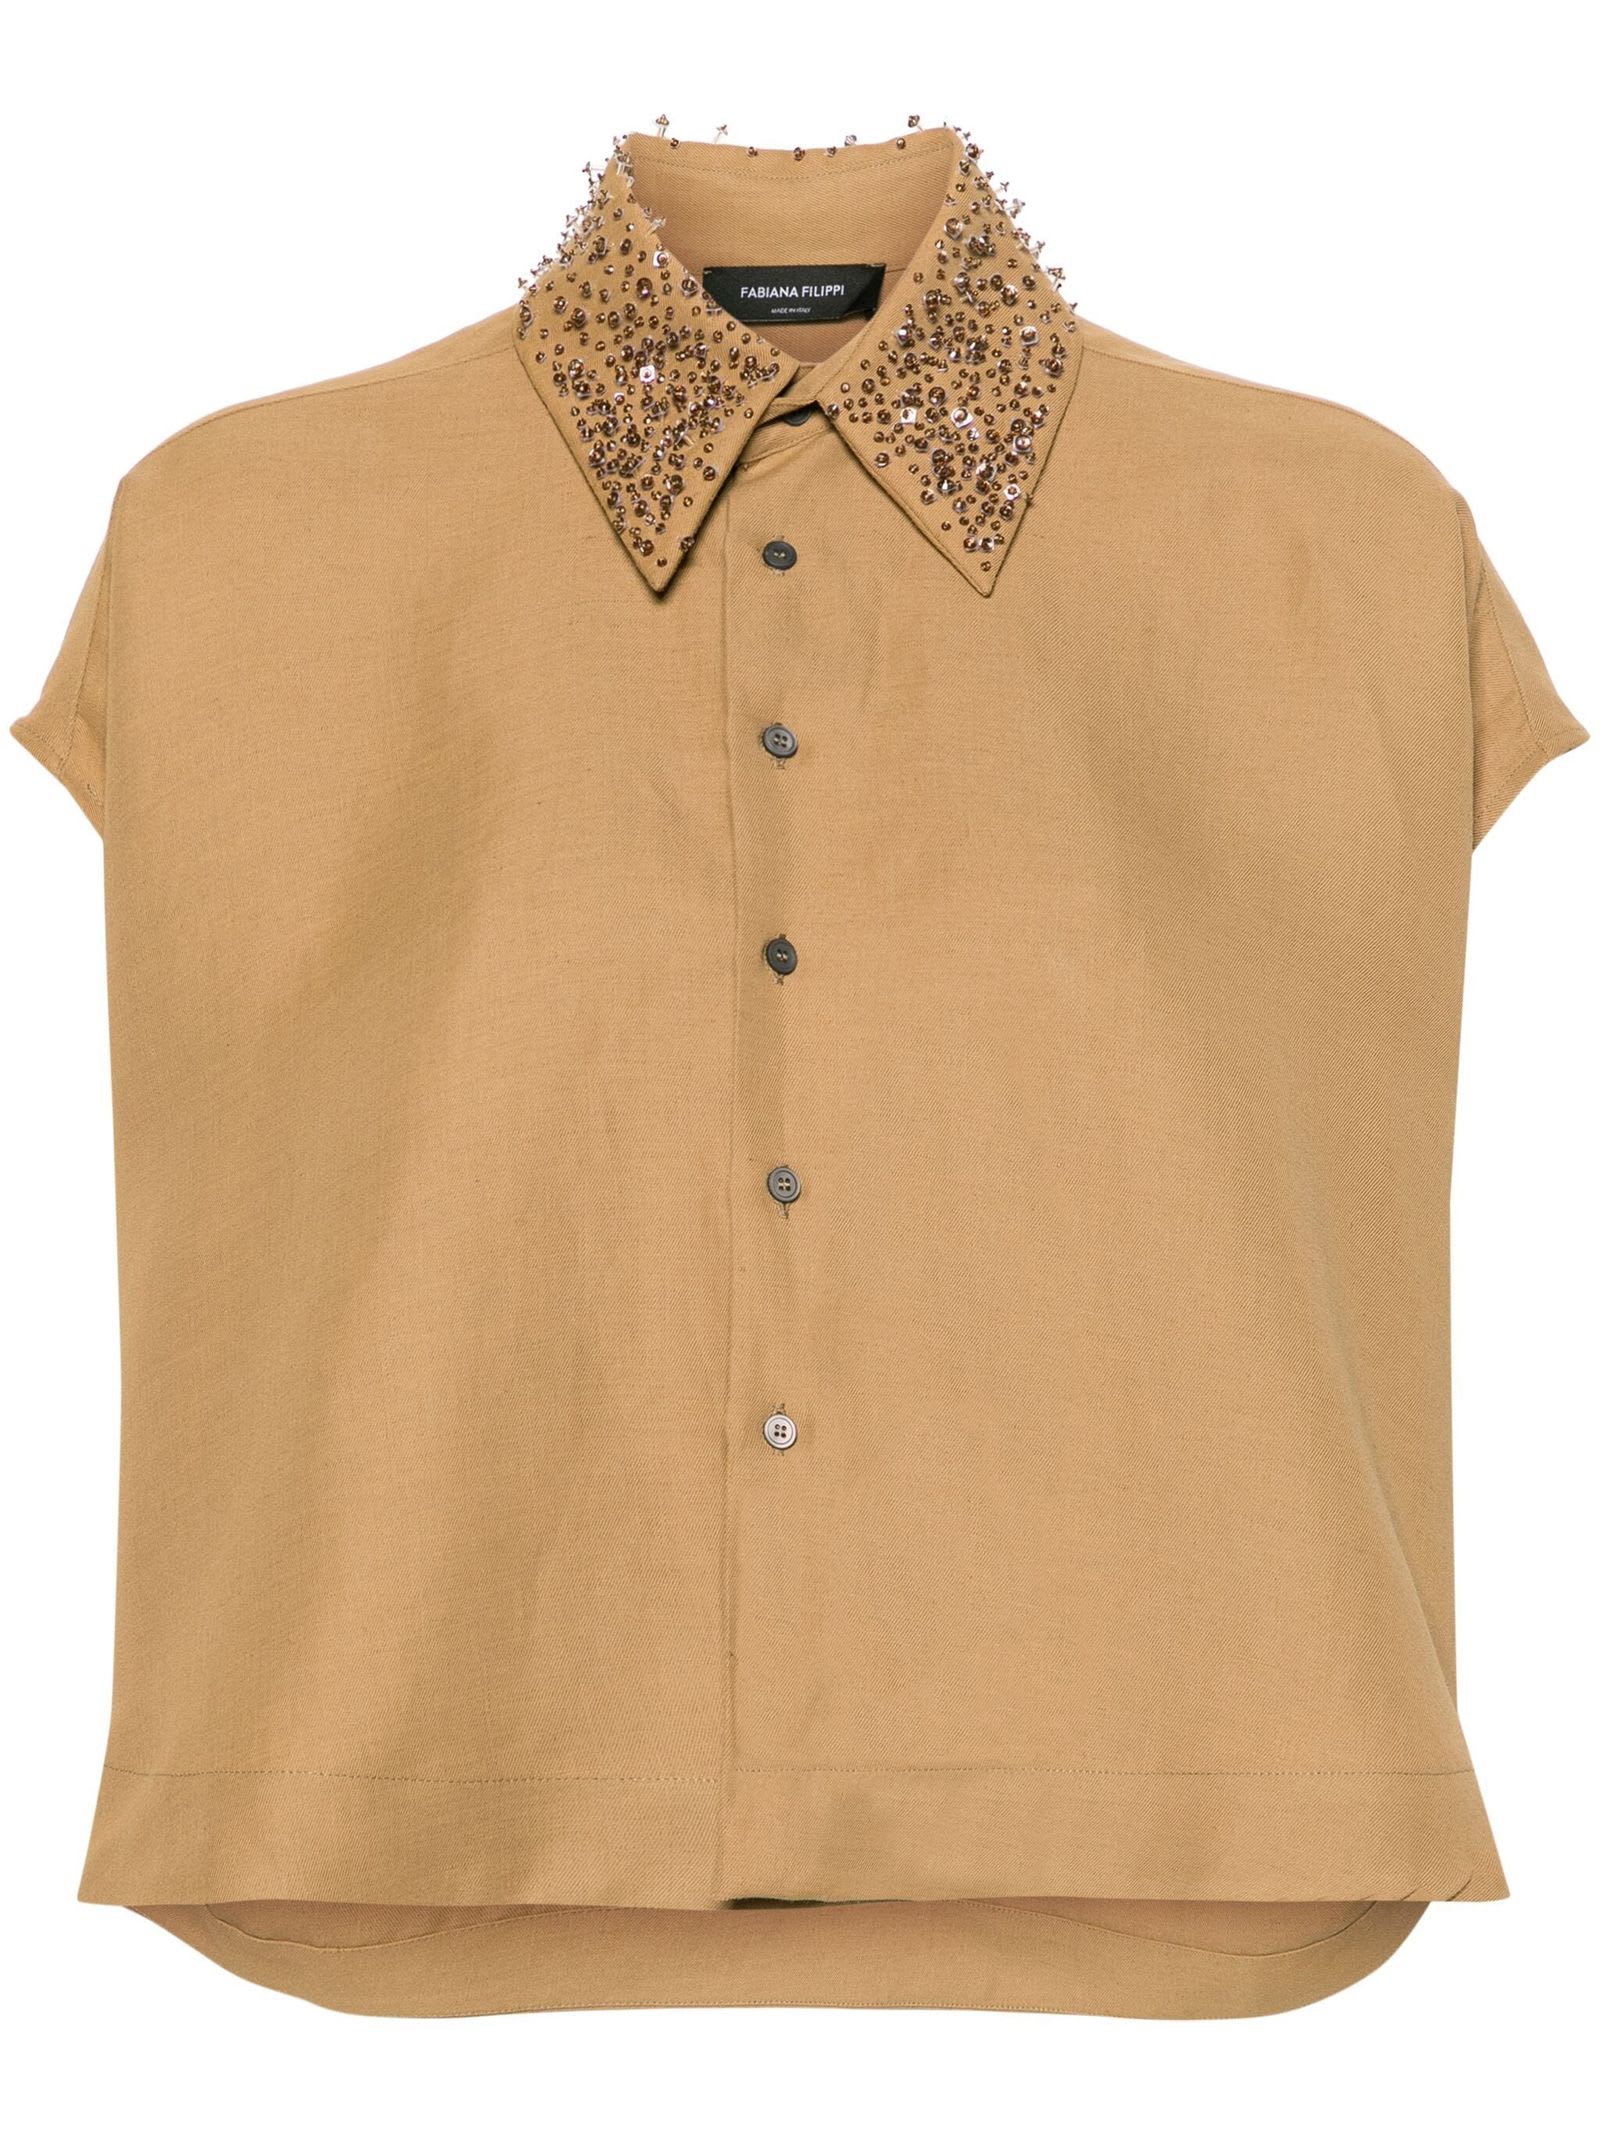 Cognac Brown Linen Shirt